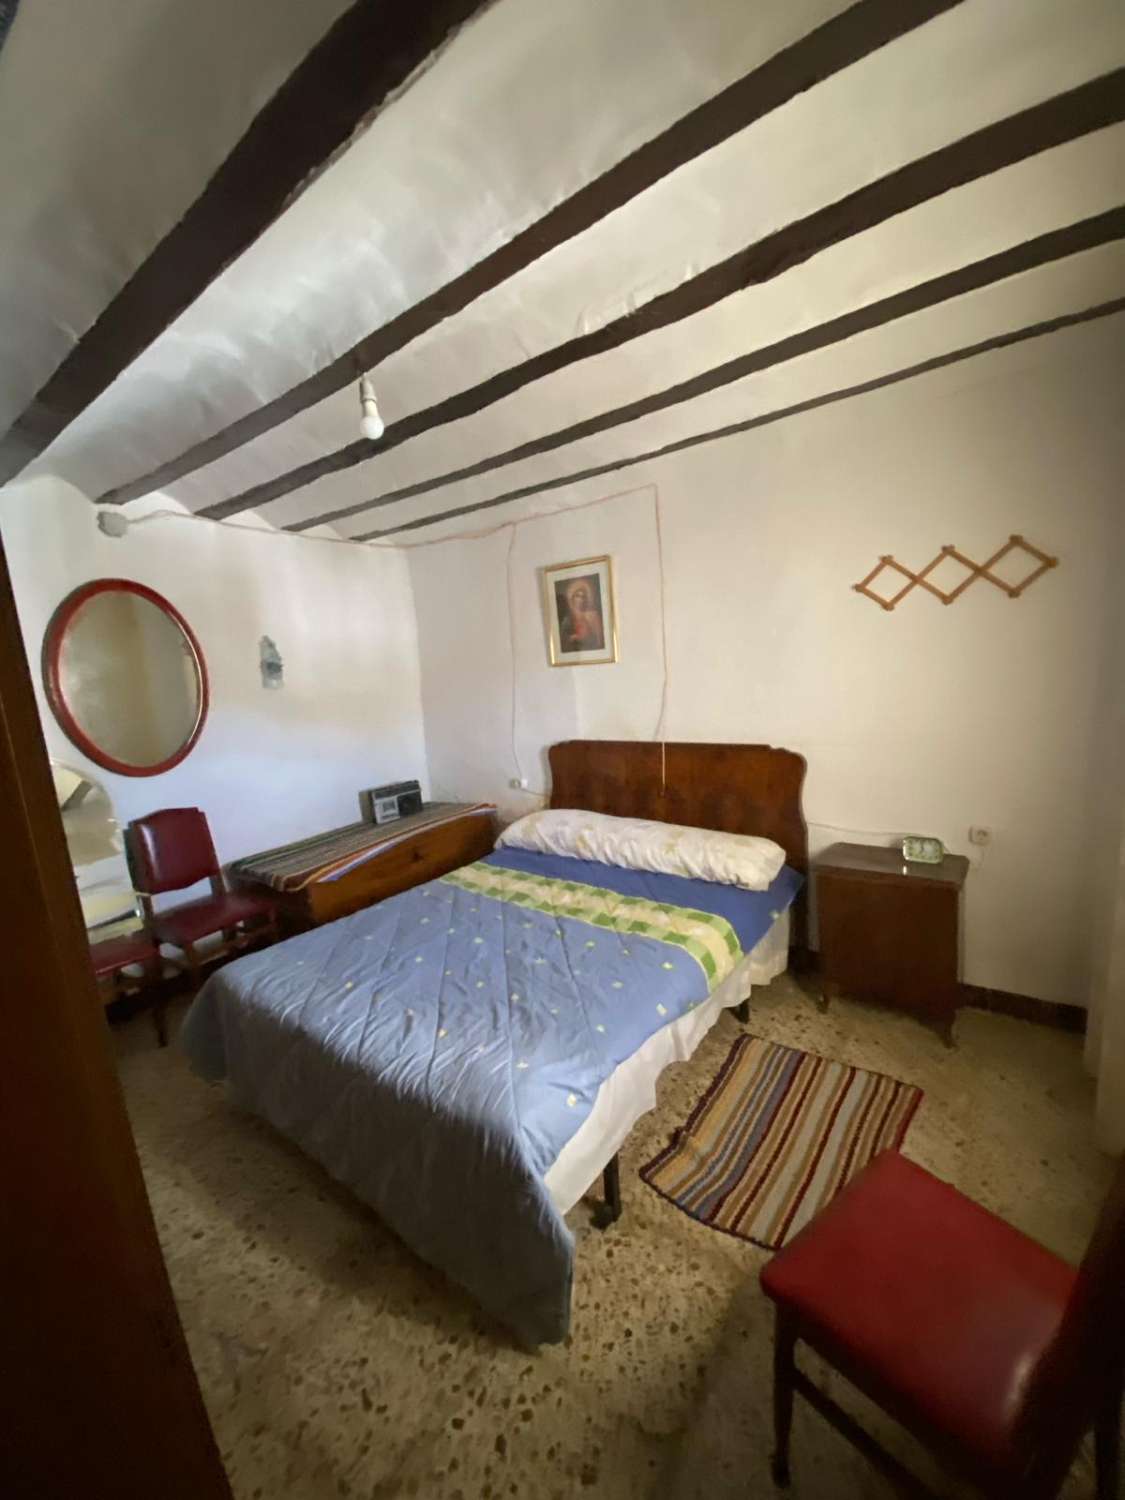 Casa de 3 dormitorios en el pueblo de Vélez Blanco con amplio espacio exterior